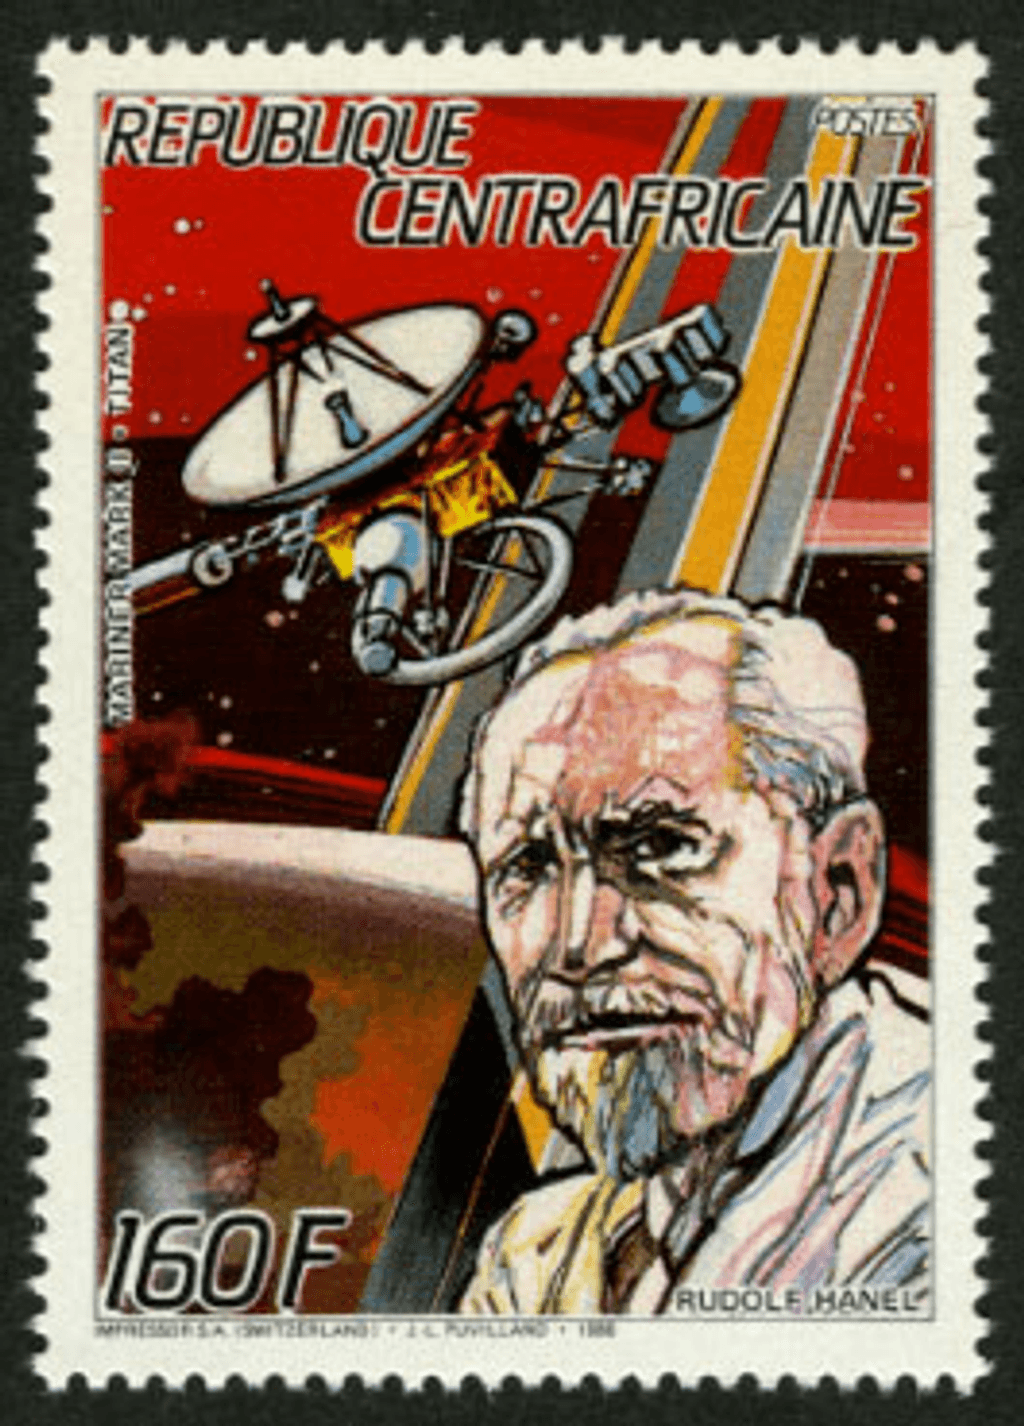 Space Travel 1987  (Herschel-Braun-Hanel-Baudry-Keller-Ockels-Merbold)